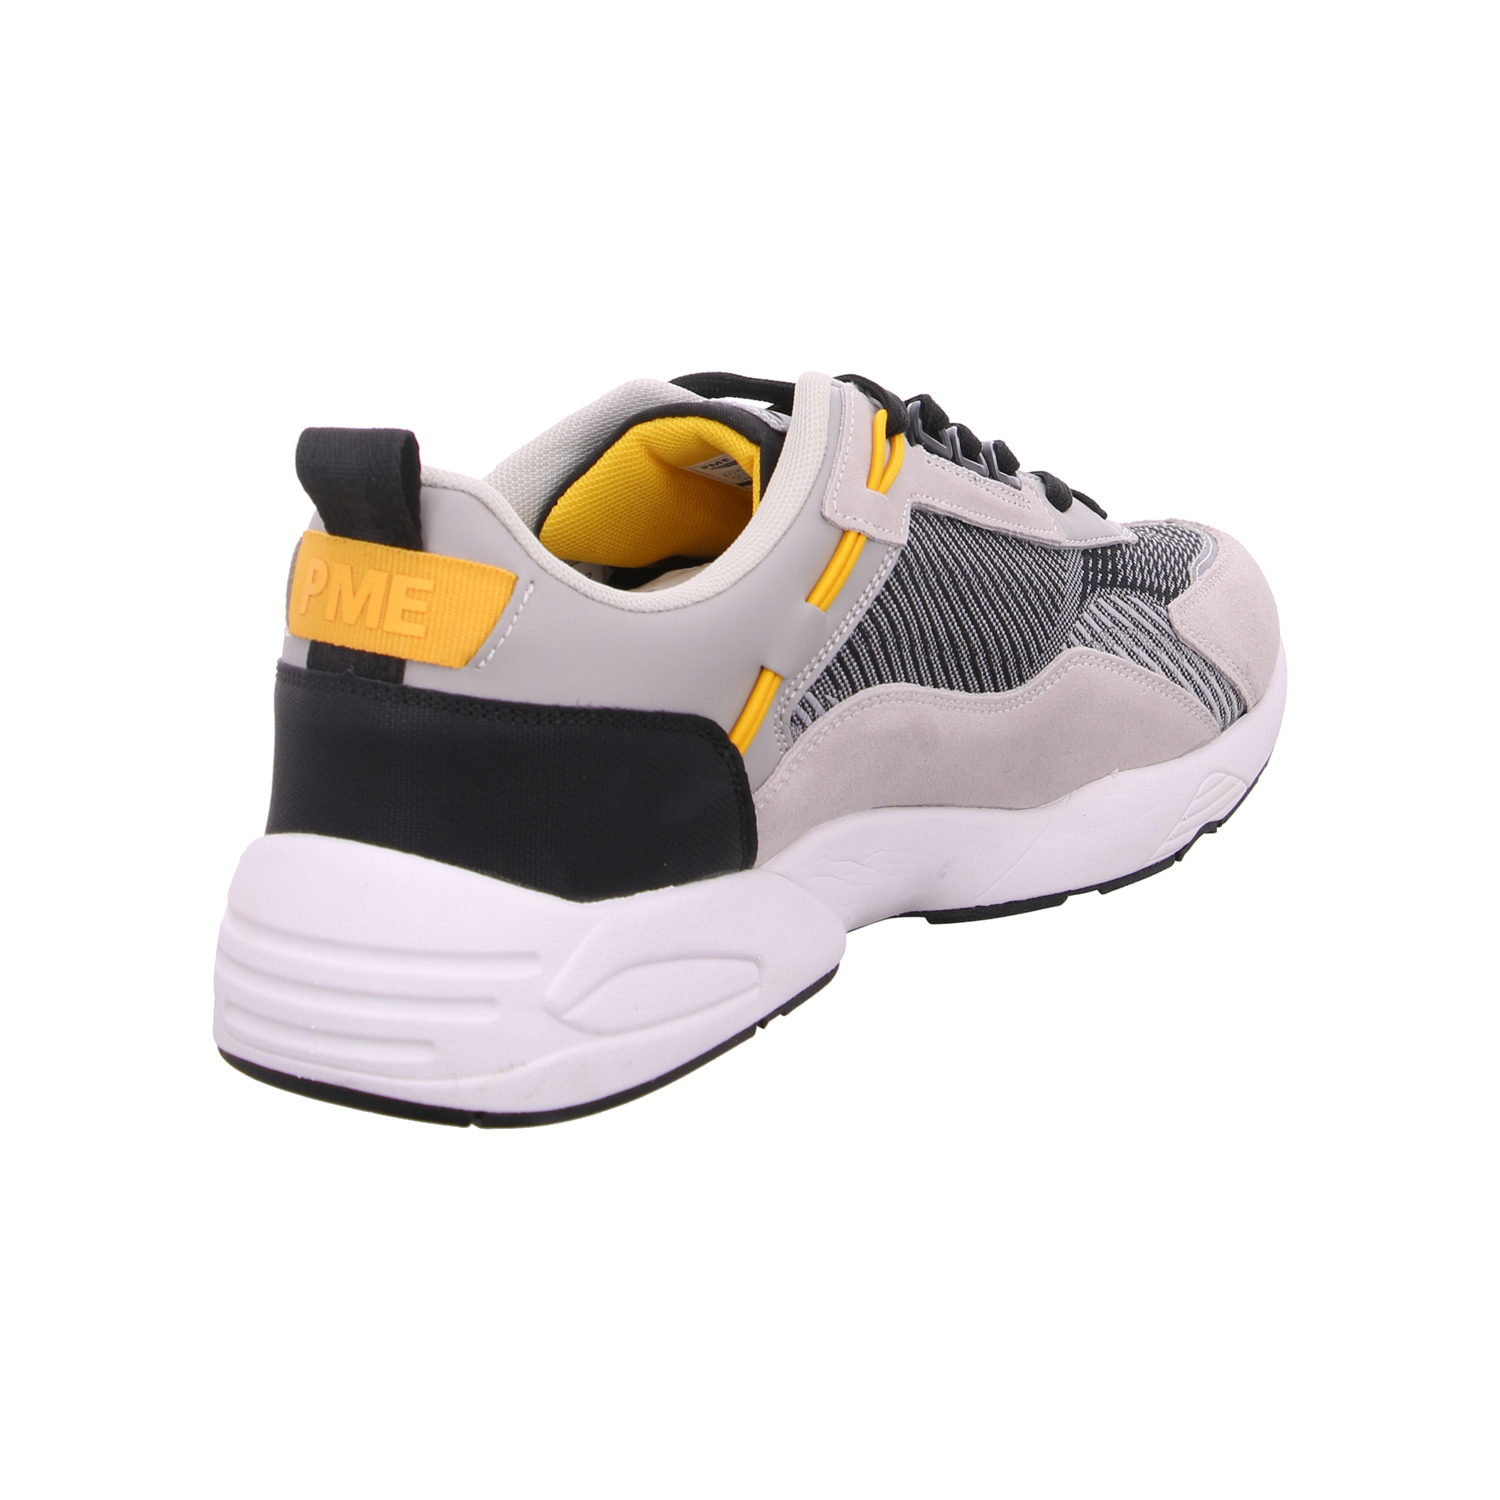 pme-legend-sneaker-grau-119202-40